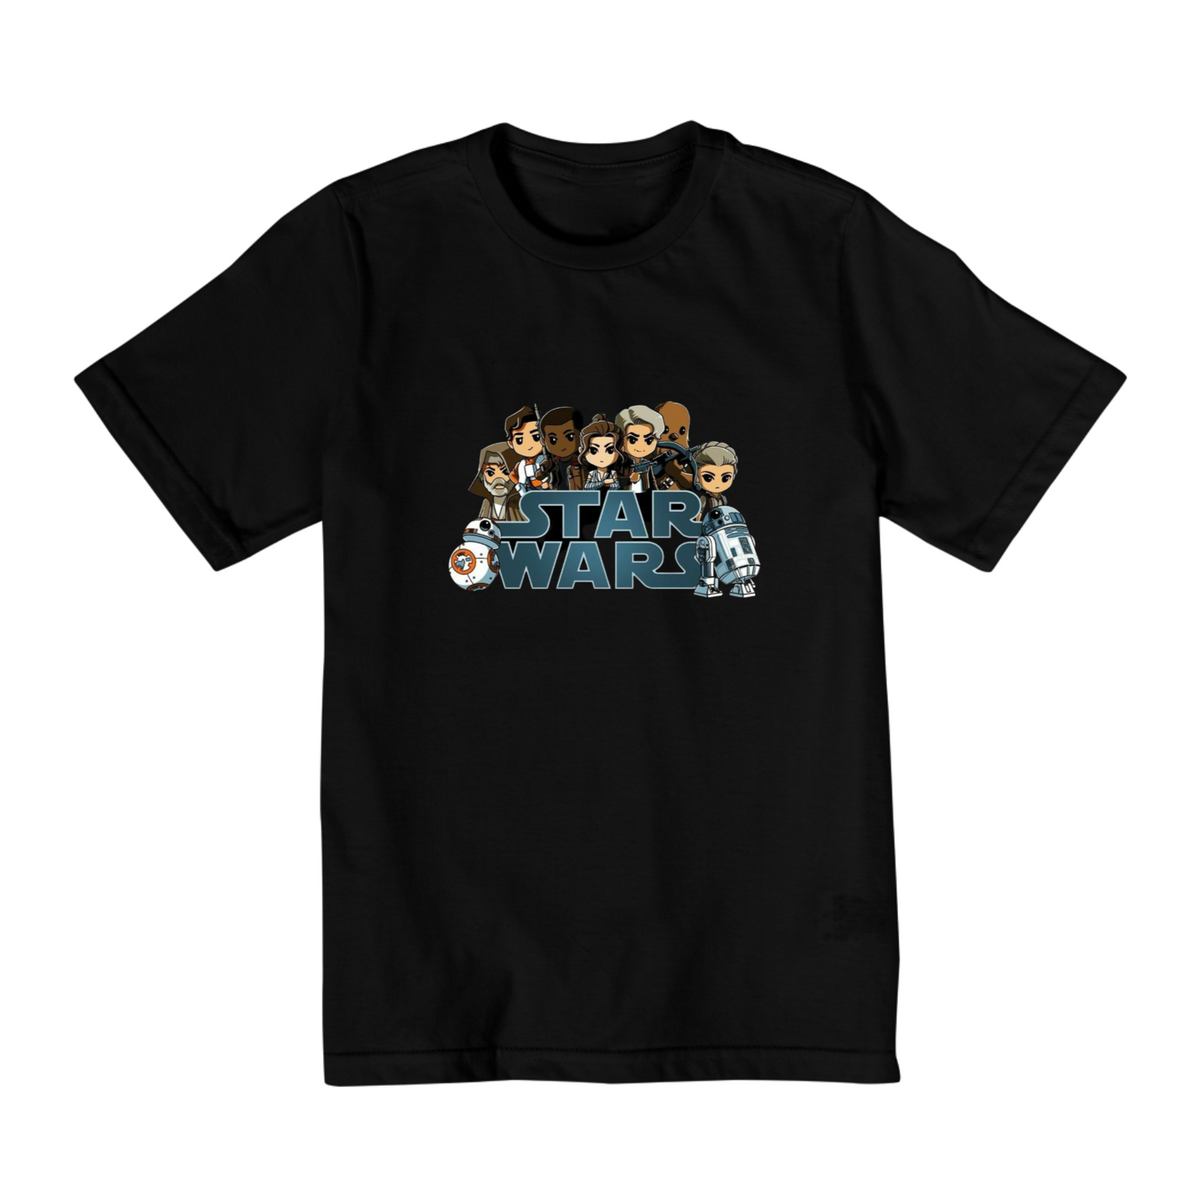 Nome do produto: Coleção Star Wars - Camiseta infantil 02 a 08 anos - Personagens